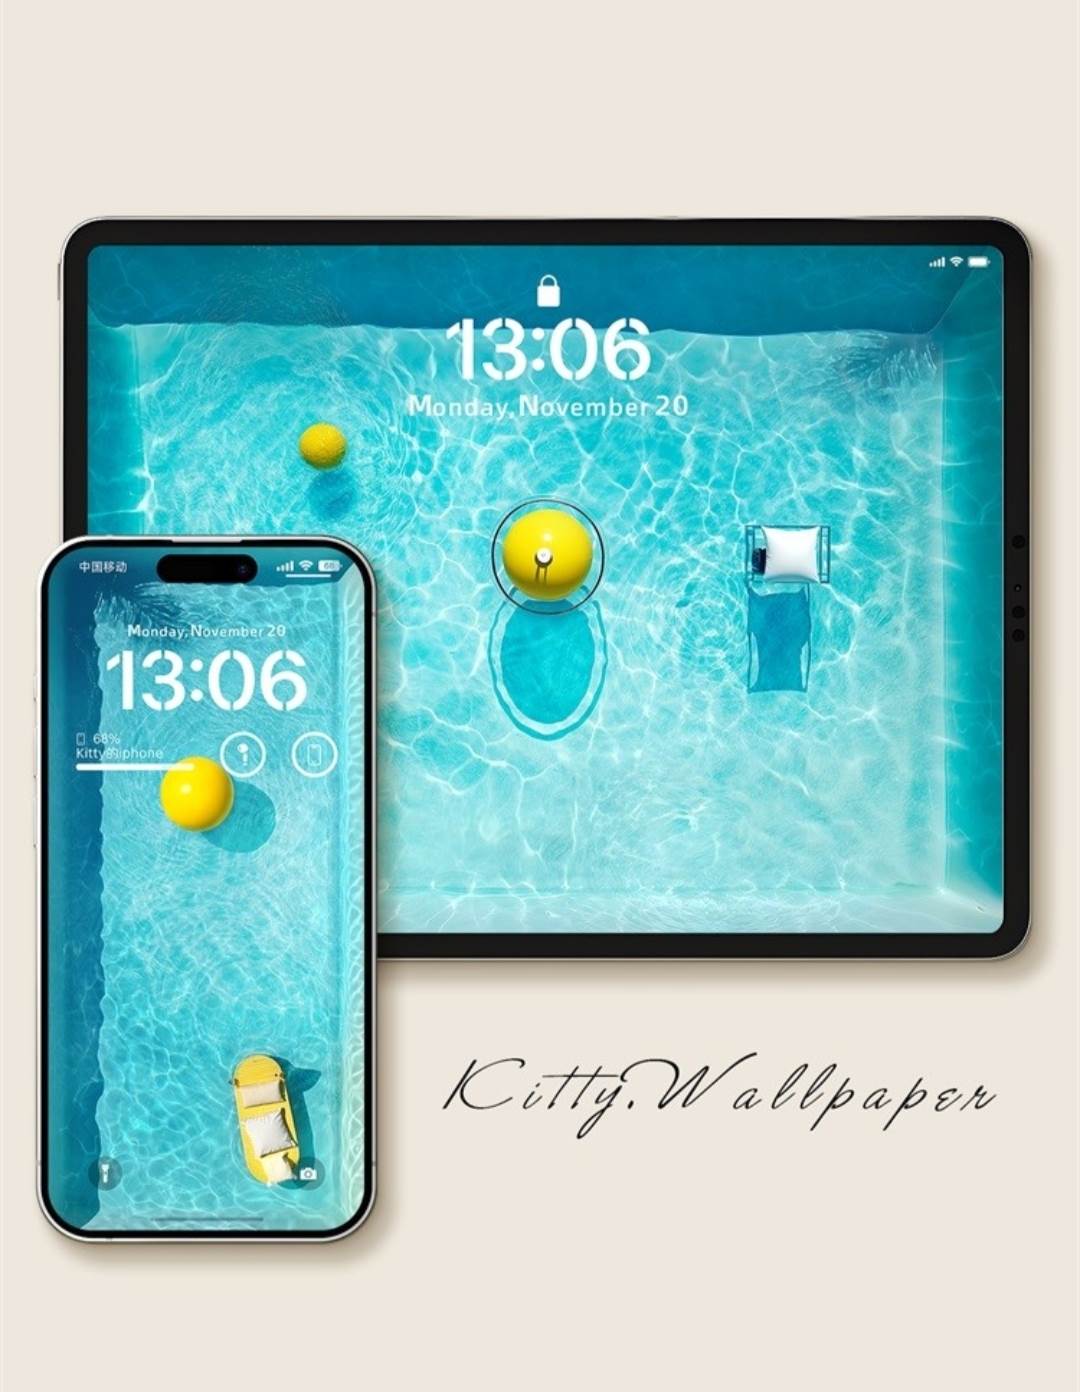 4K超清手机壁纸 3d泳池派对 iPhone iPad小米平板电脑桌面壁纸